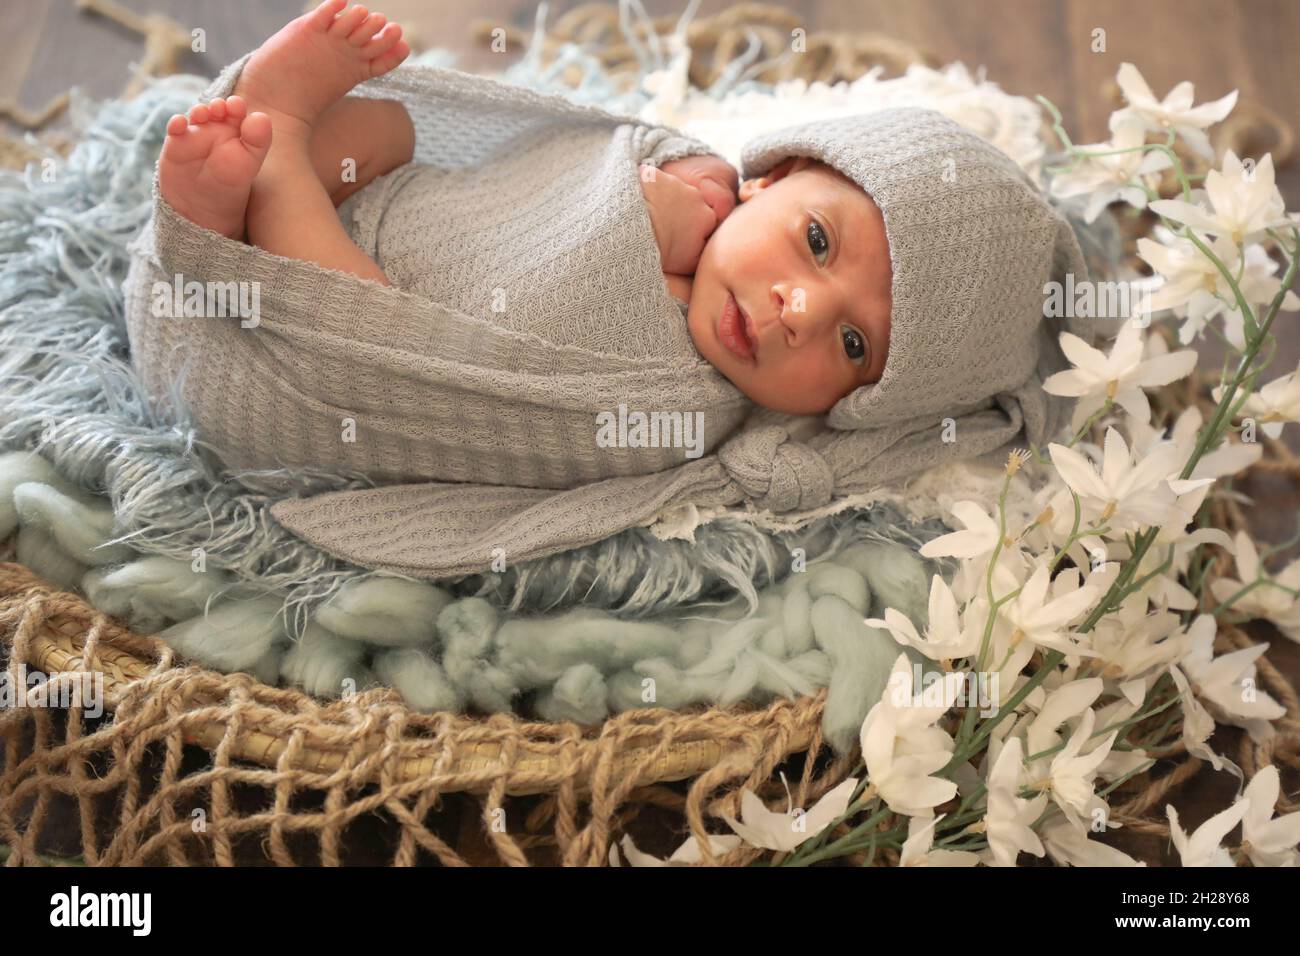 Petite fille musulmane arabe douce de 6 mois posée et posée sur une laine confortable visage mignon vue du haut portrait foulard gris doux Banque D'Images